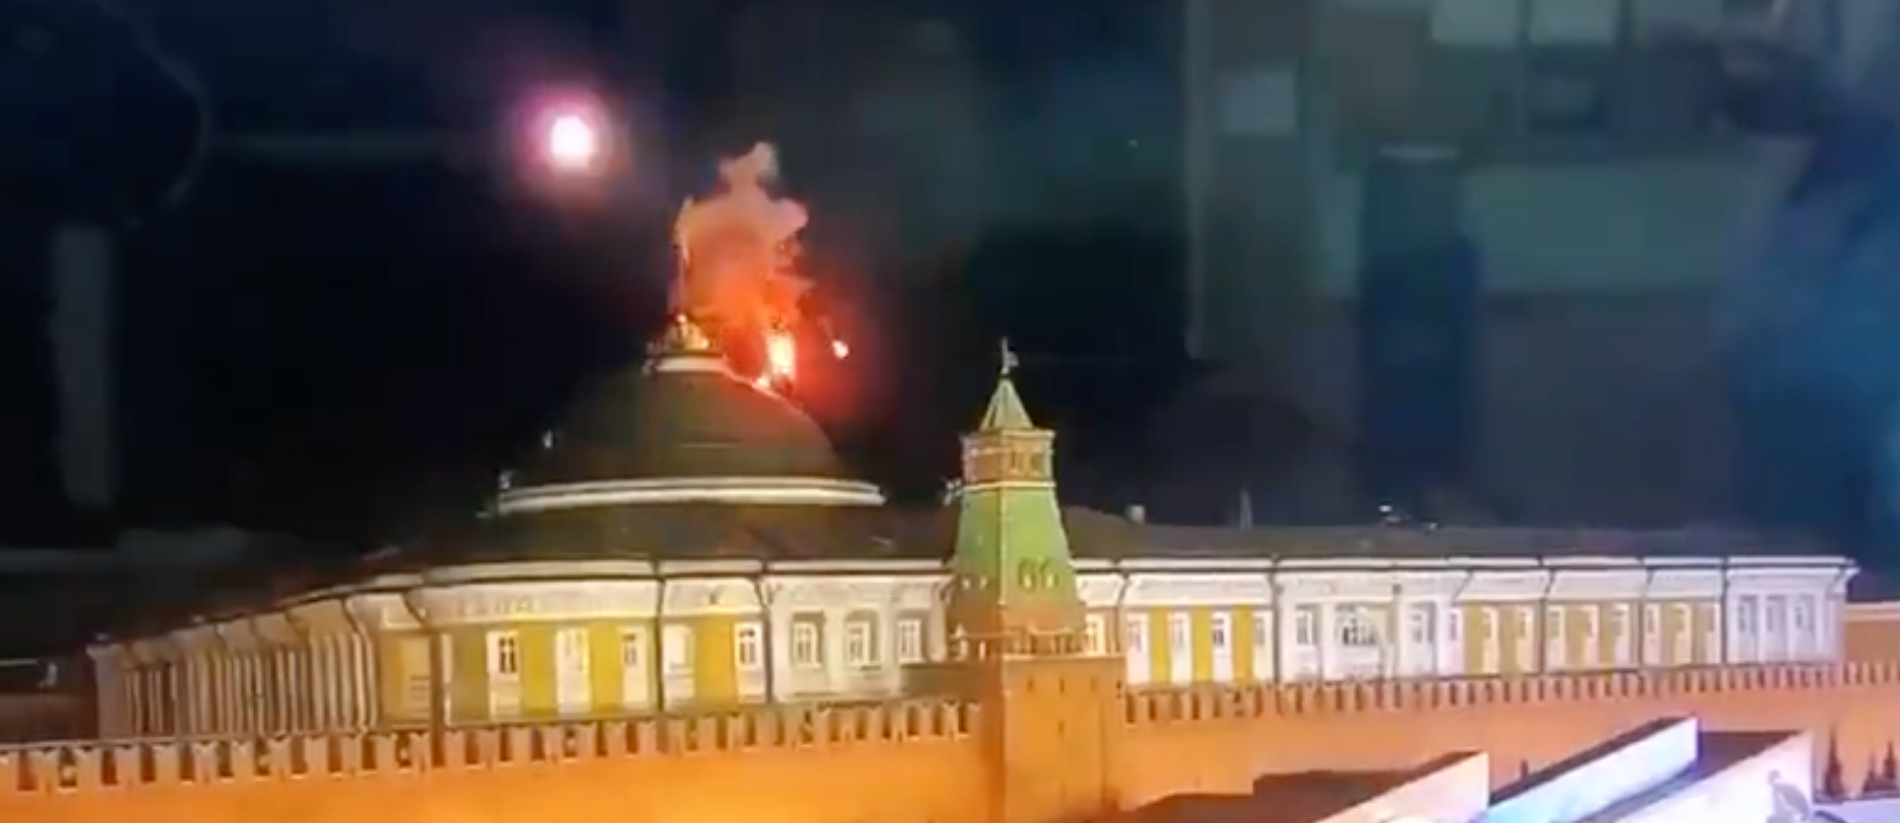 En drönare fångades på film när den flög in över Kreml.